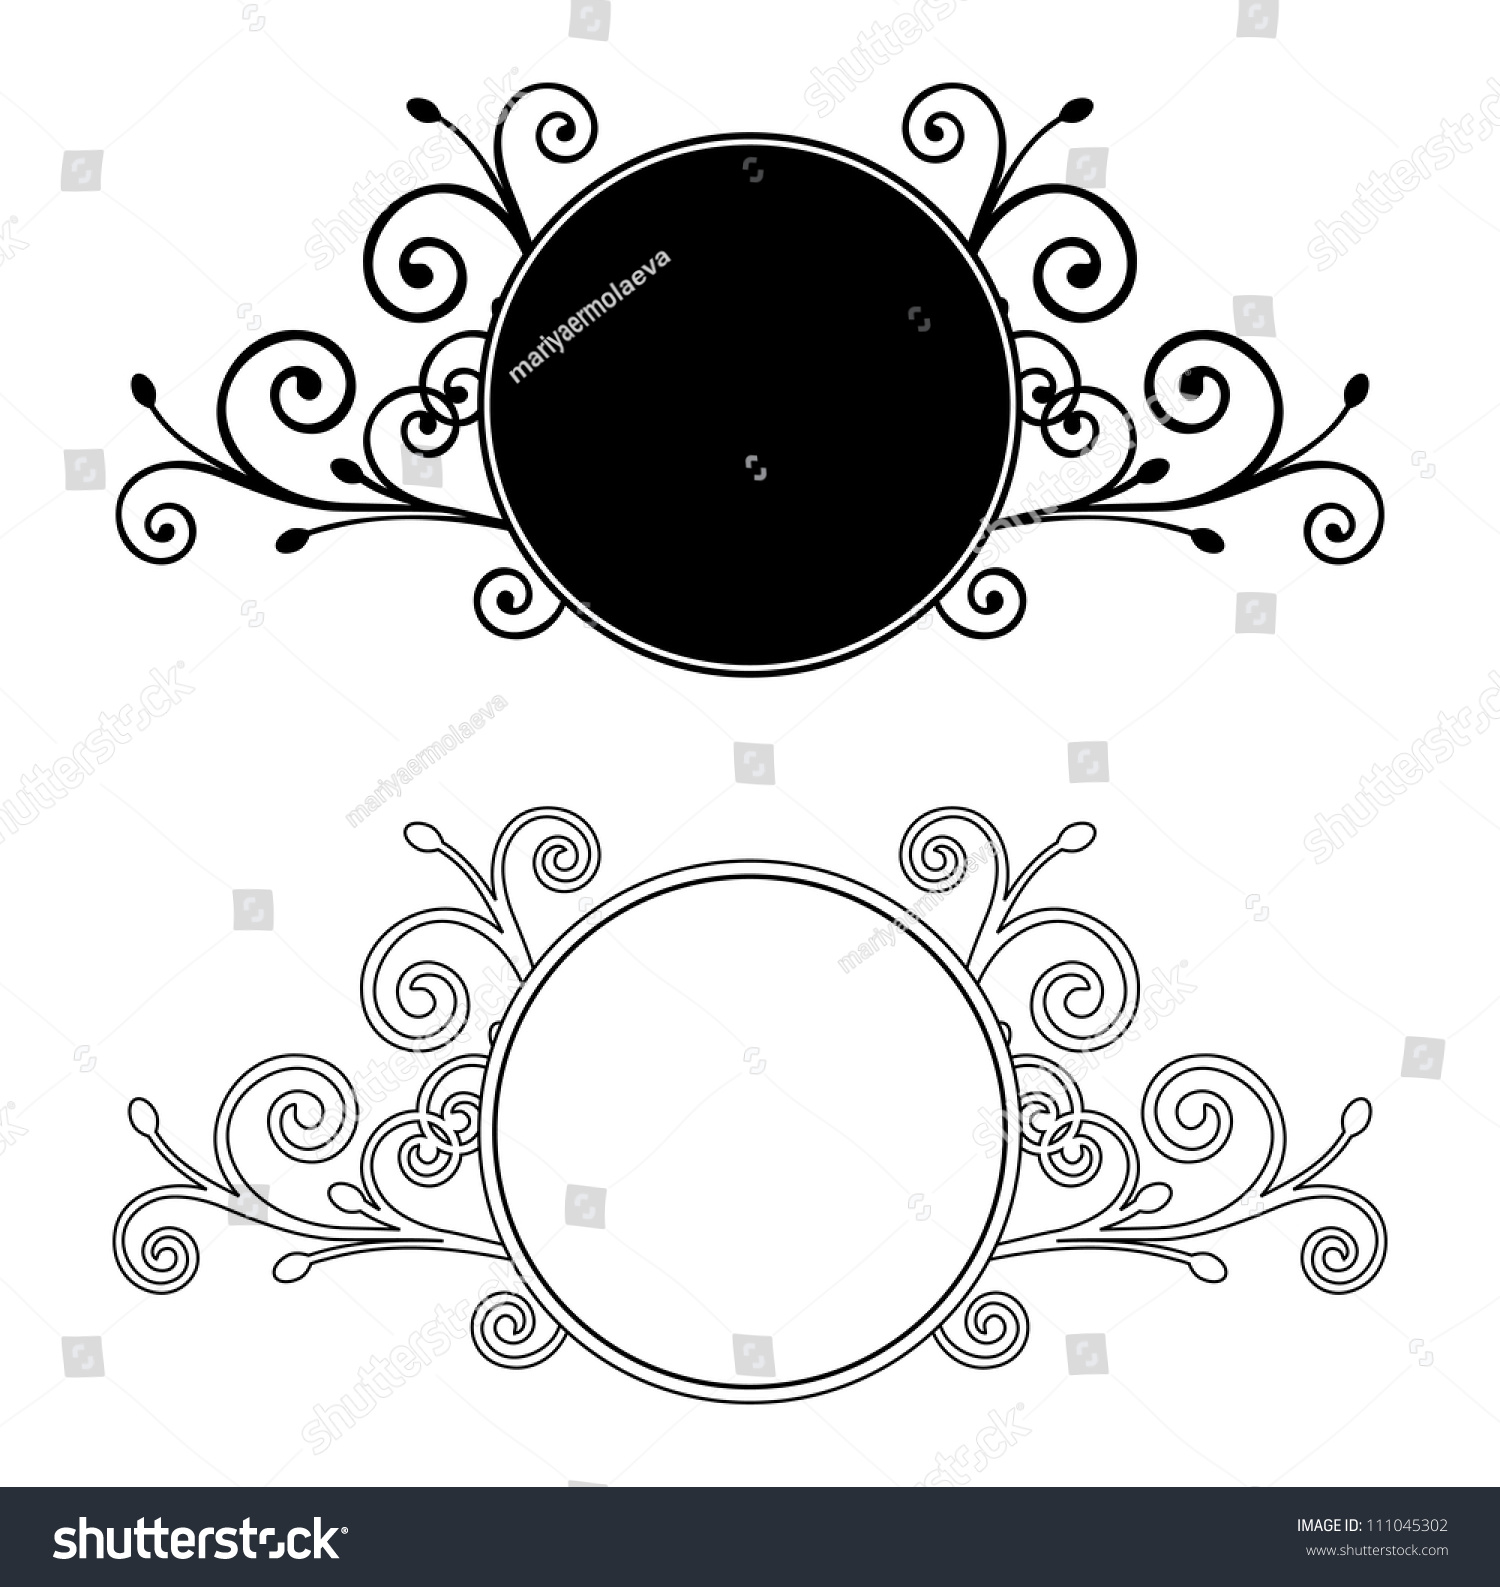 Decorative Floral Frames. Vector Illustration - 111045302 : Shutterstock